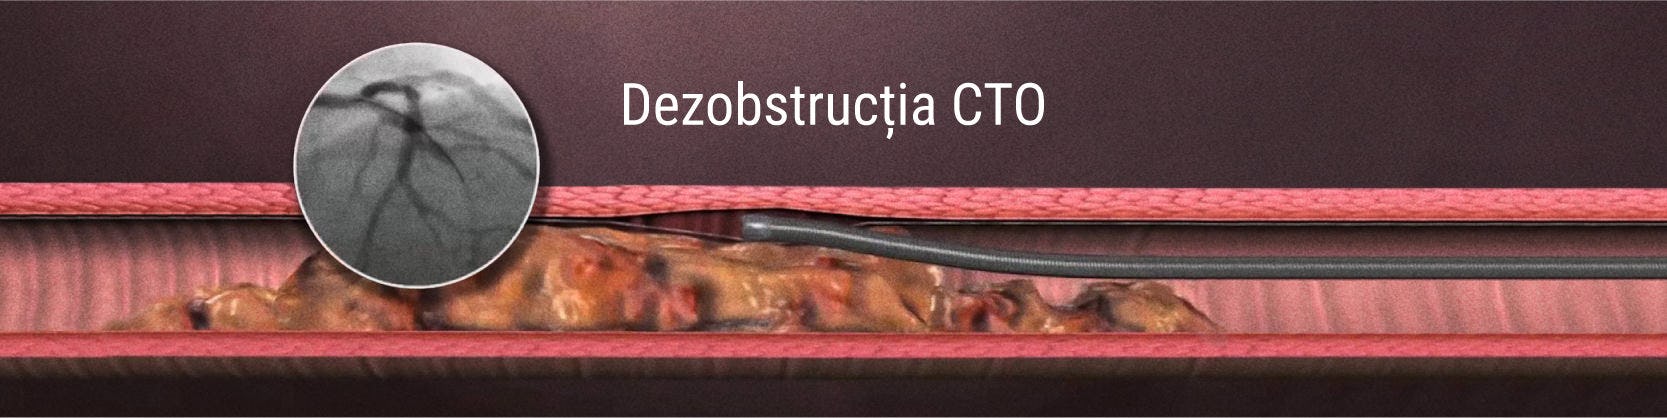 Revascularizarea ocluziilor coronariene cronice totale (CTO)